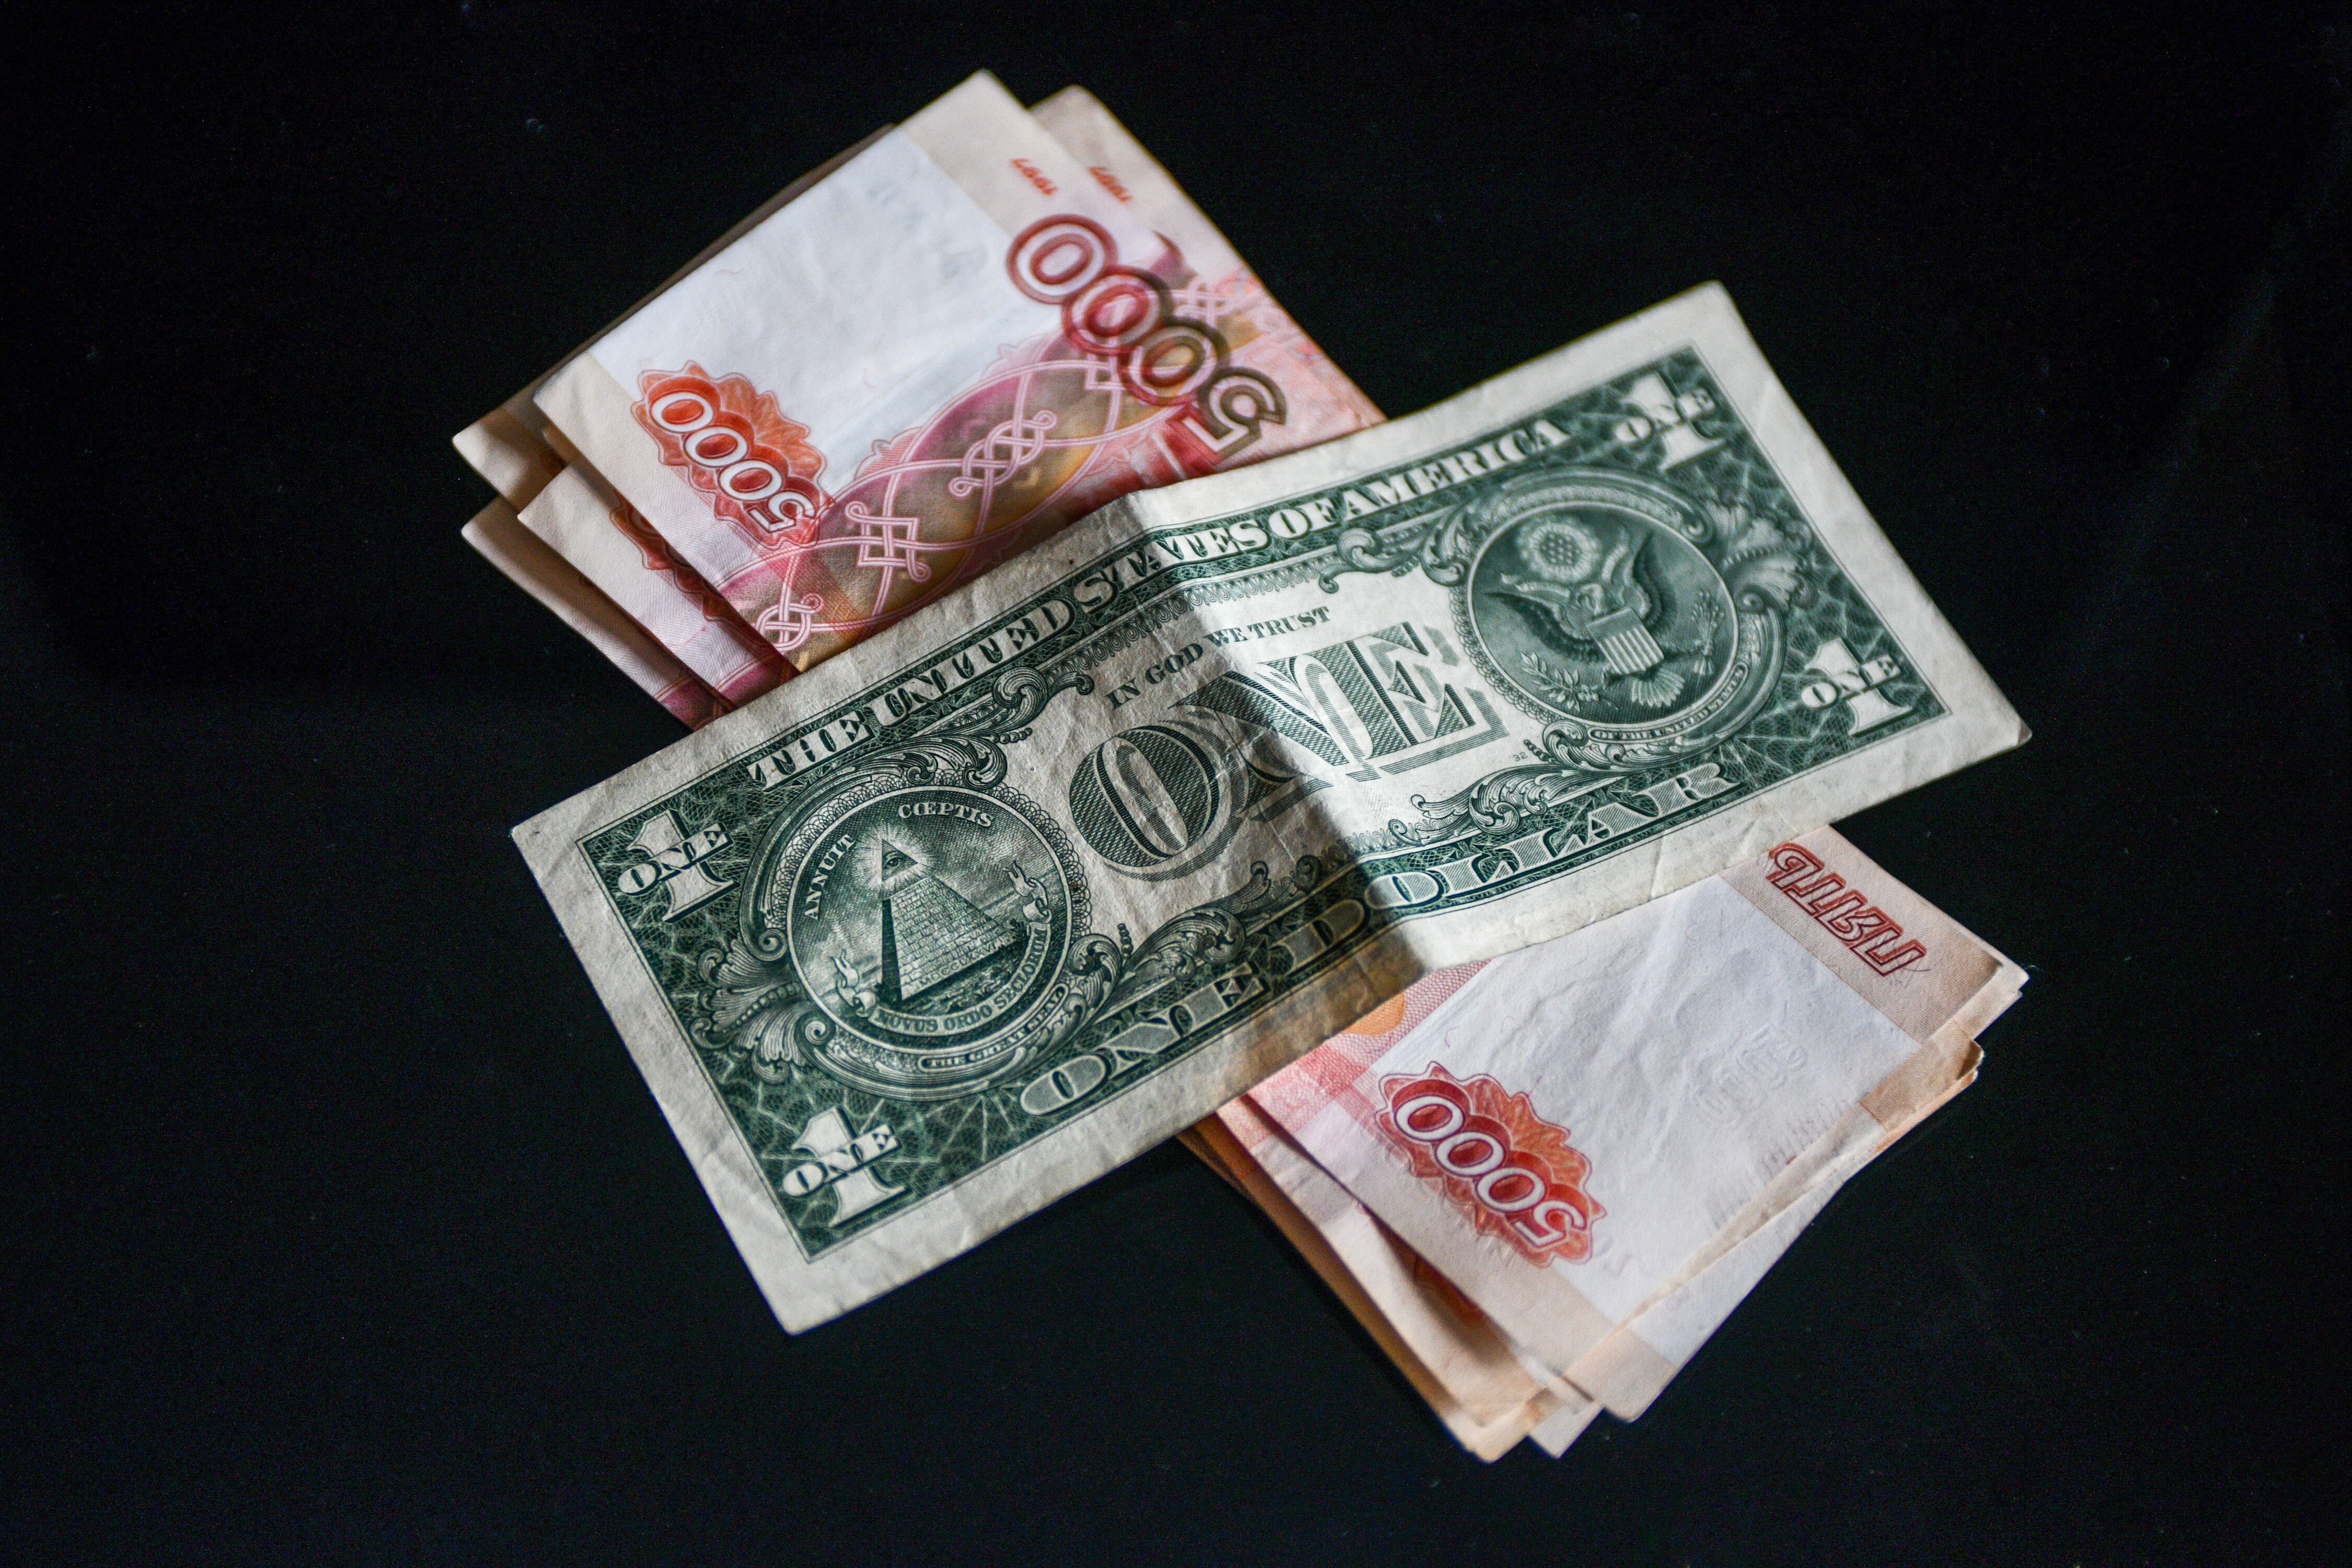 Минфин поддержал естественный переход с доллара на рубли в международных расчётах